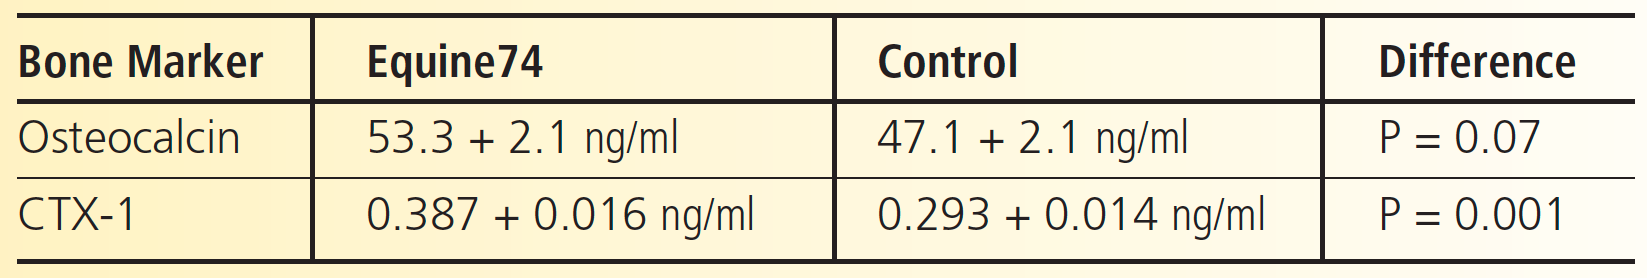 Bone Marker Equine74 Control Difference Osteocalcin 53.3 + 2.1 ng/ml 47.1 + 2.1 ng/ml P = 0.07 CTX-1 0.387 + 0.016 ng/ml 0.293 + 0.014 ng/ml P = 0.001